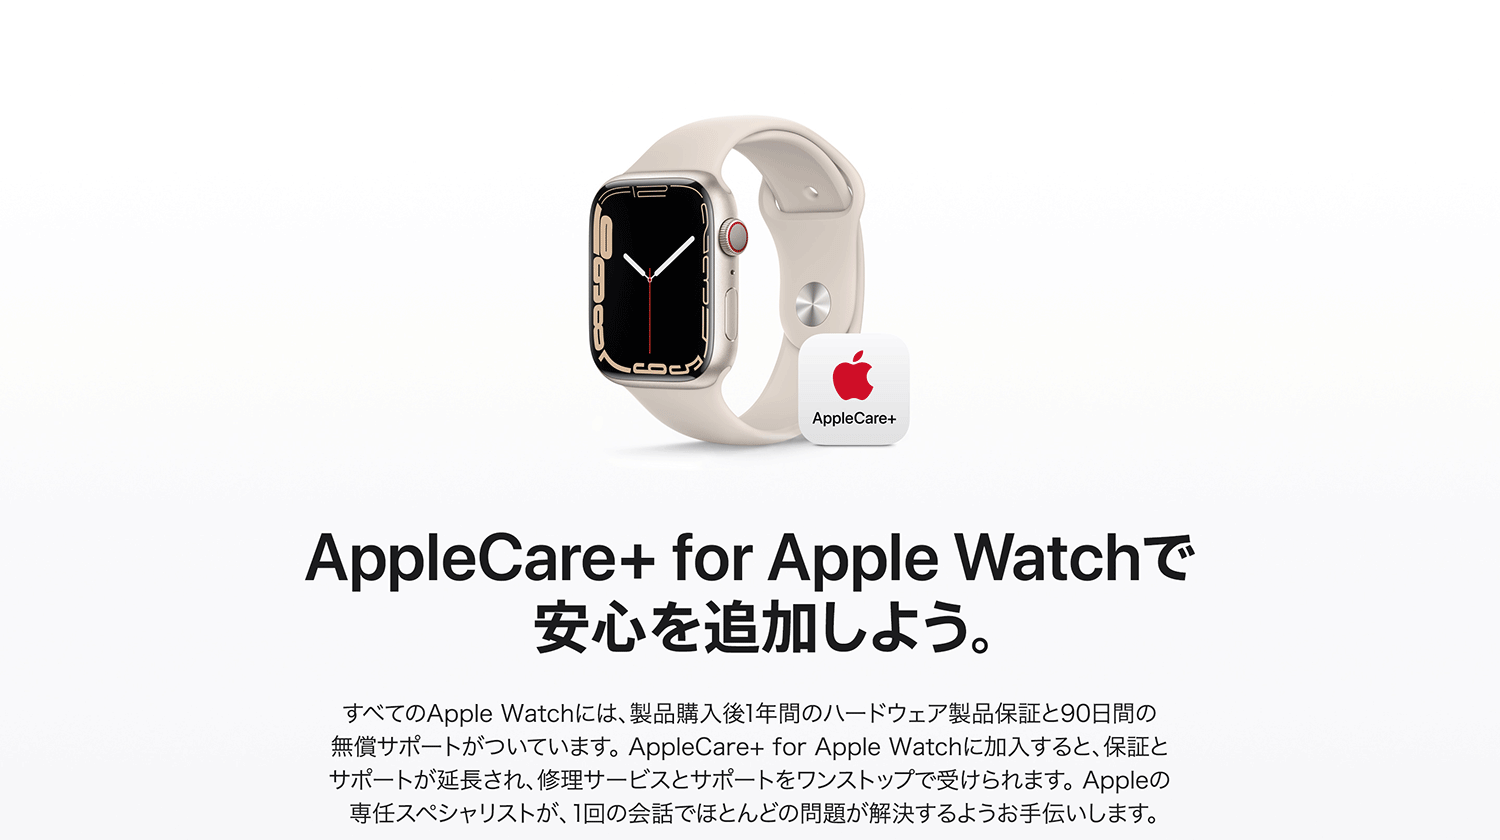 在AppleCare+for Apple Watch追加安心吧。